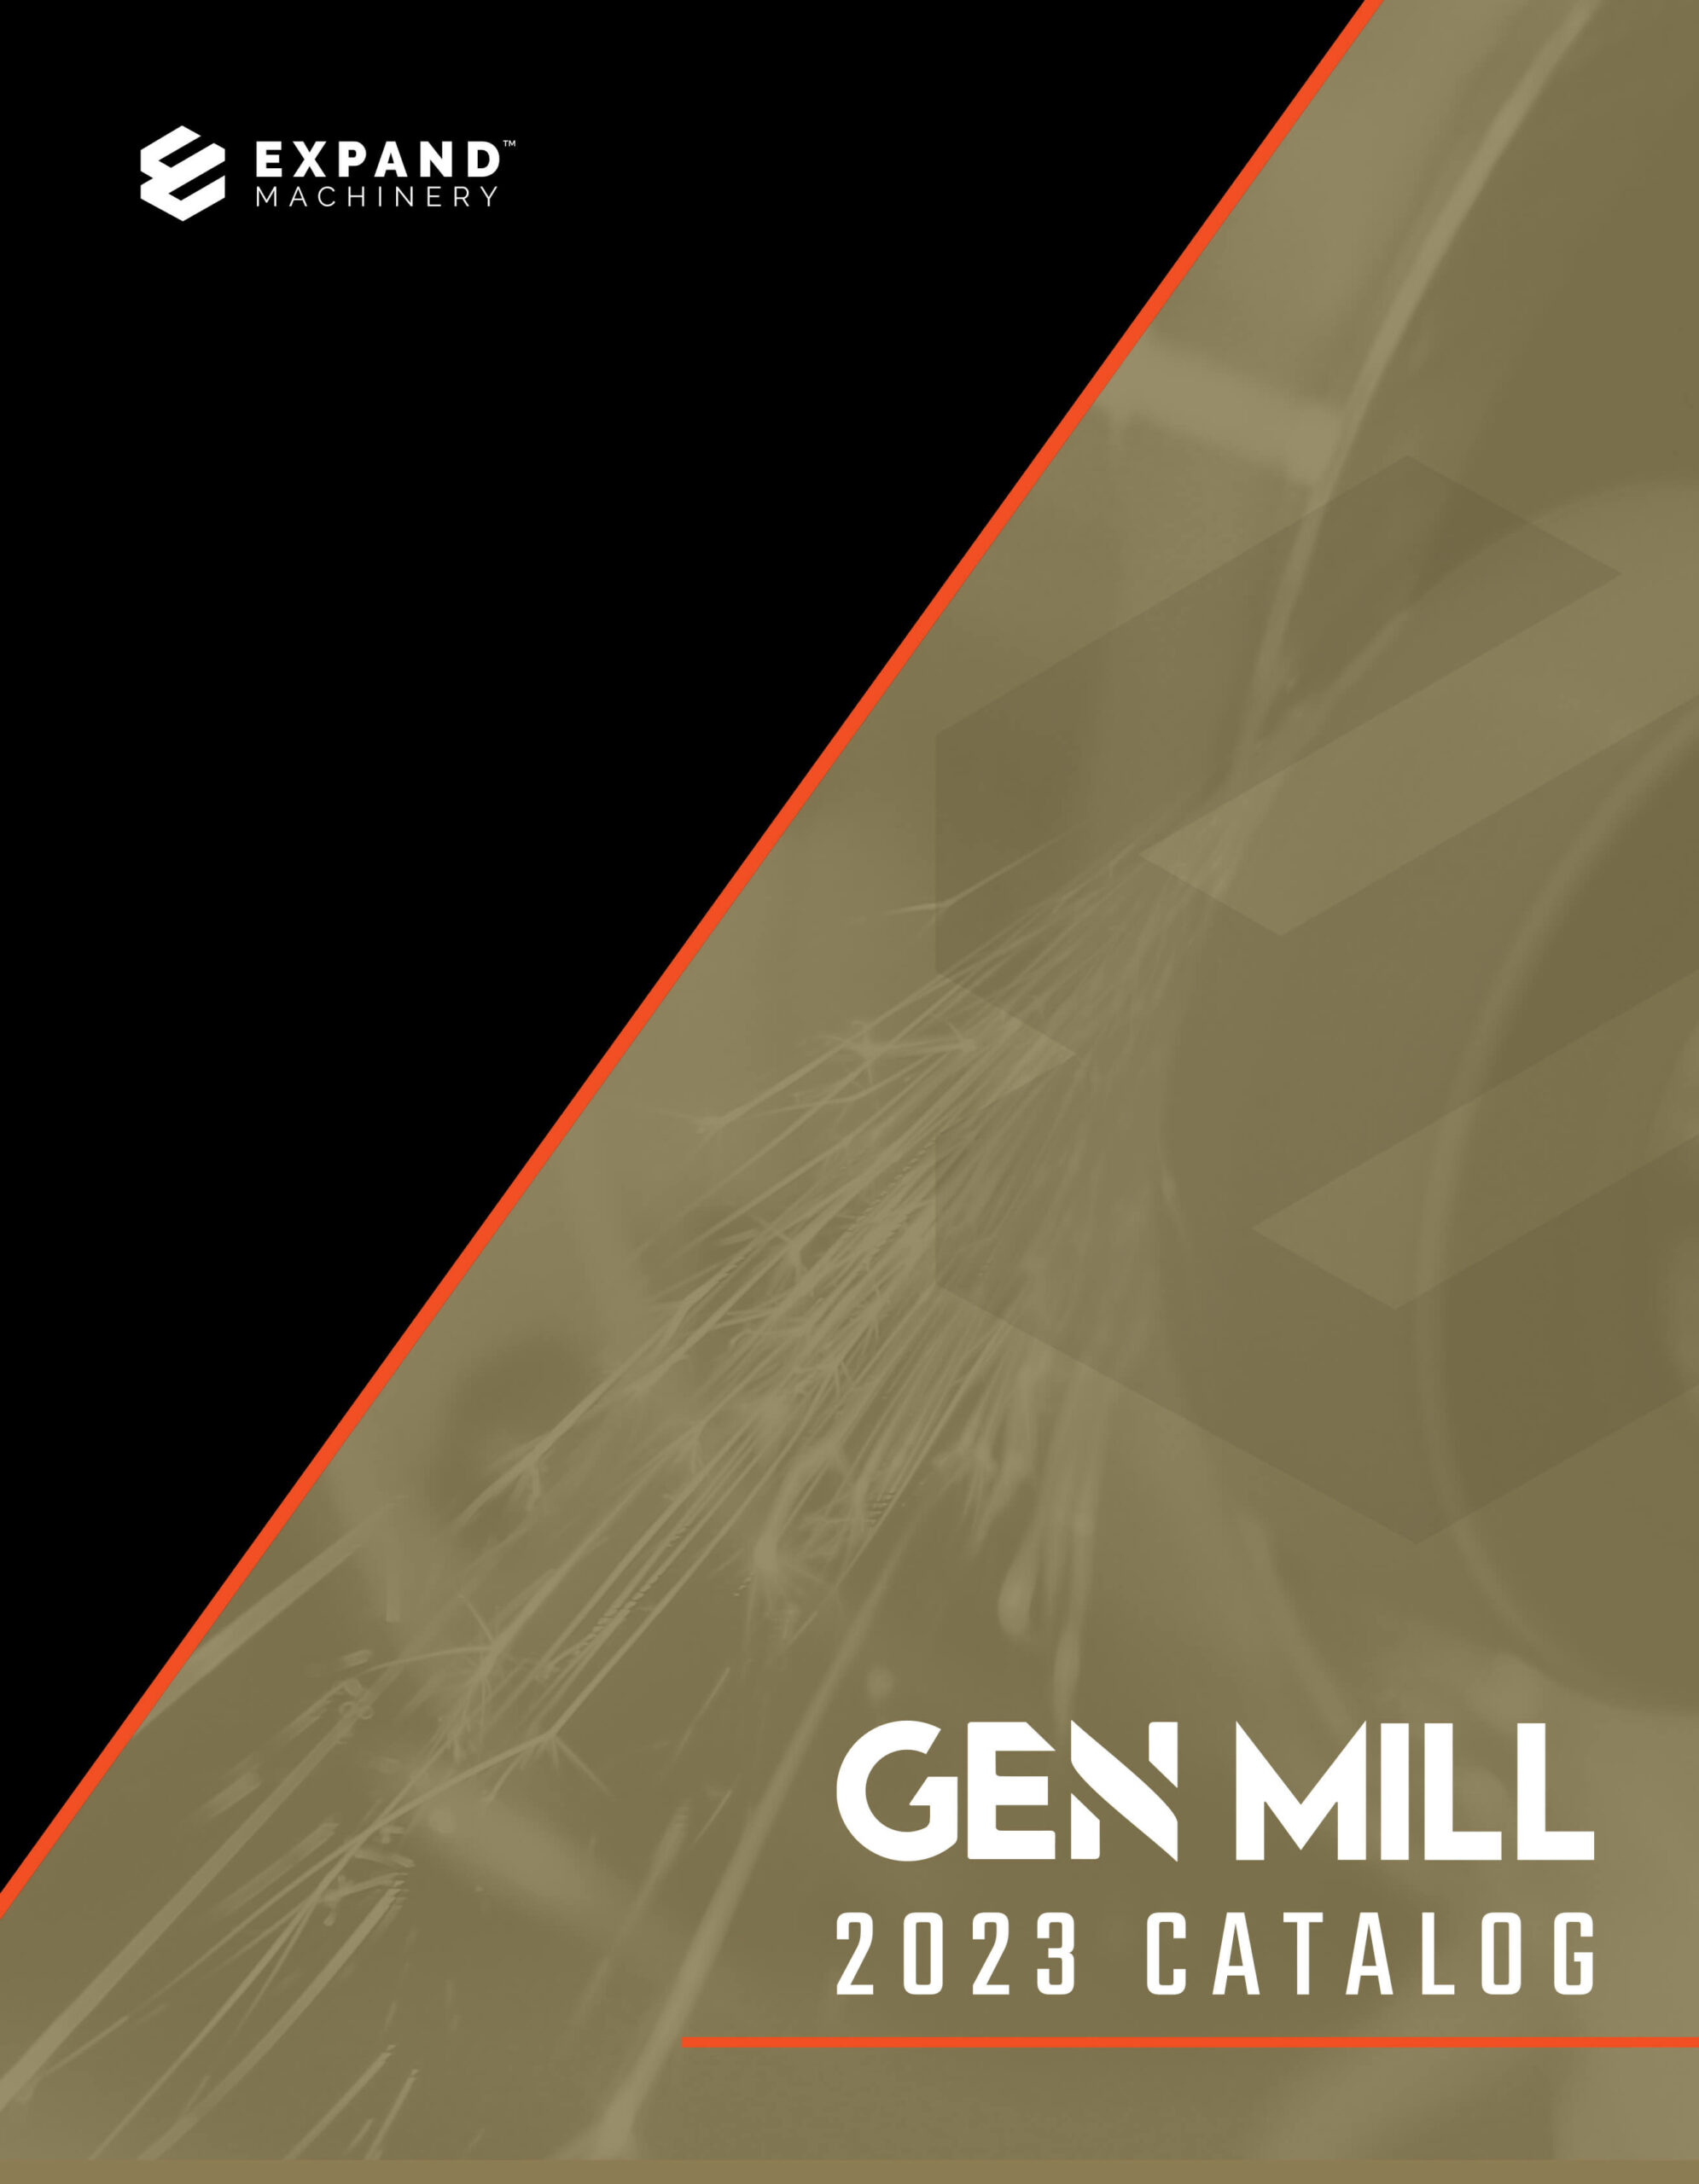 GEN MILL 4024 40.55” X 23.62” 3 Axis High Speed Vertical Machining Center